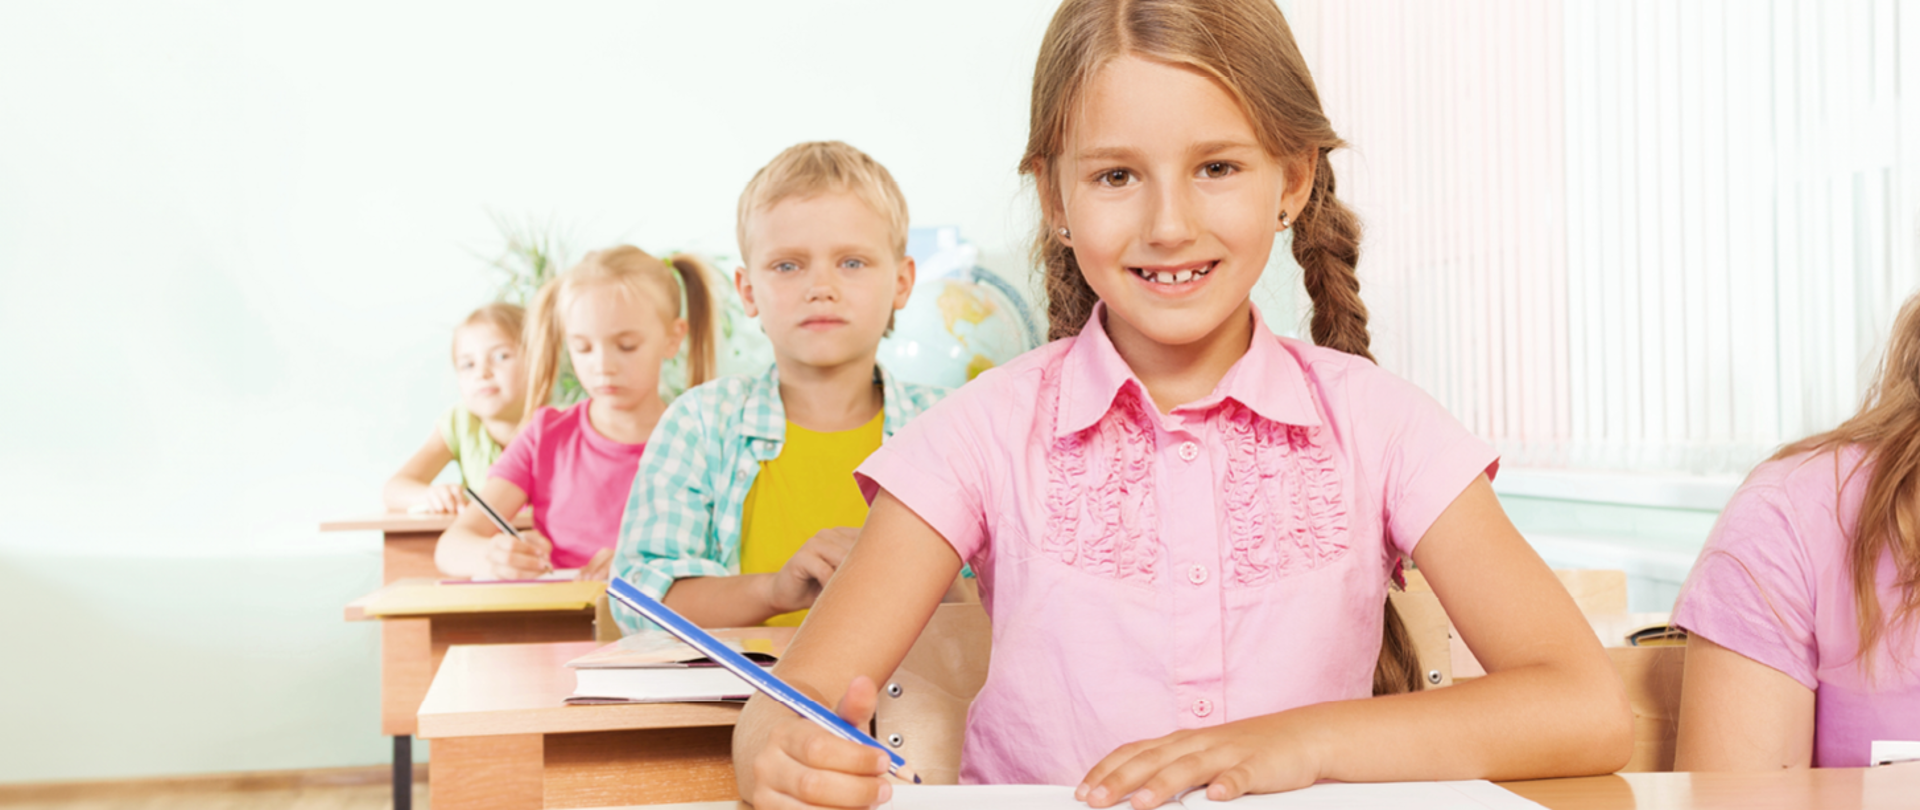 Dzieci siedzące przy ławkach w klasie. Na pierwszym planie uśmiechnięta dziewczynka z kredką w dłoni. 